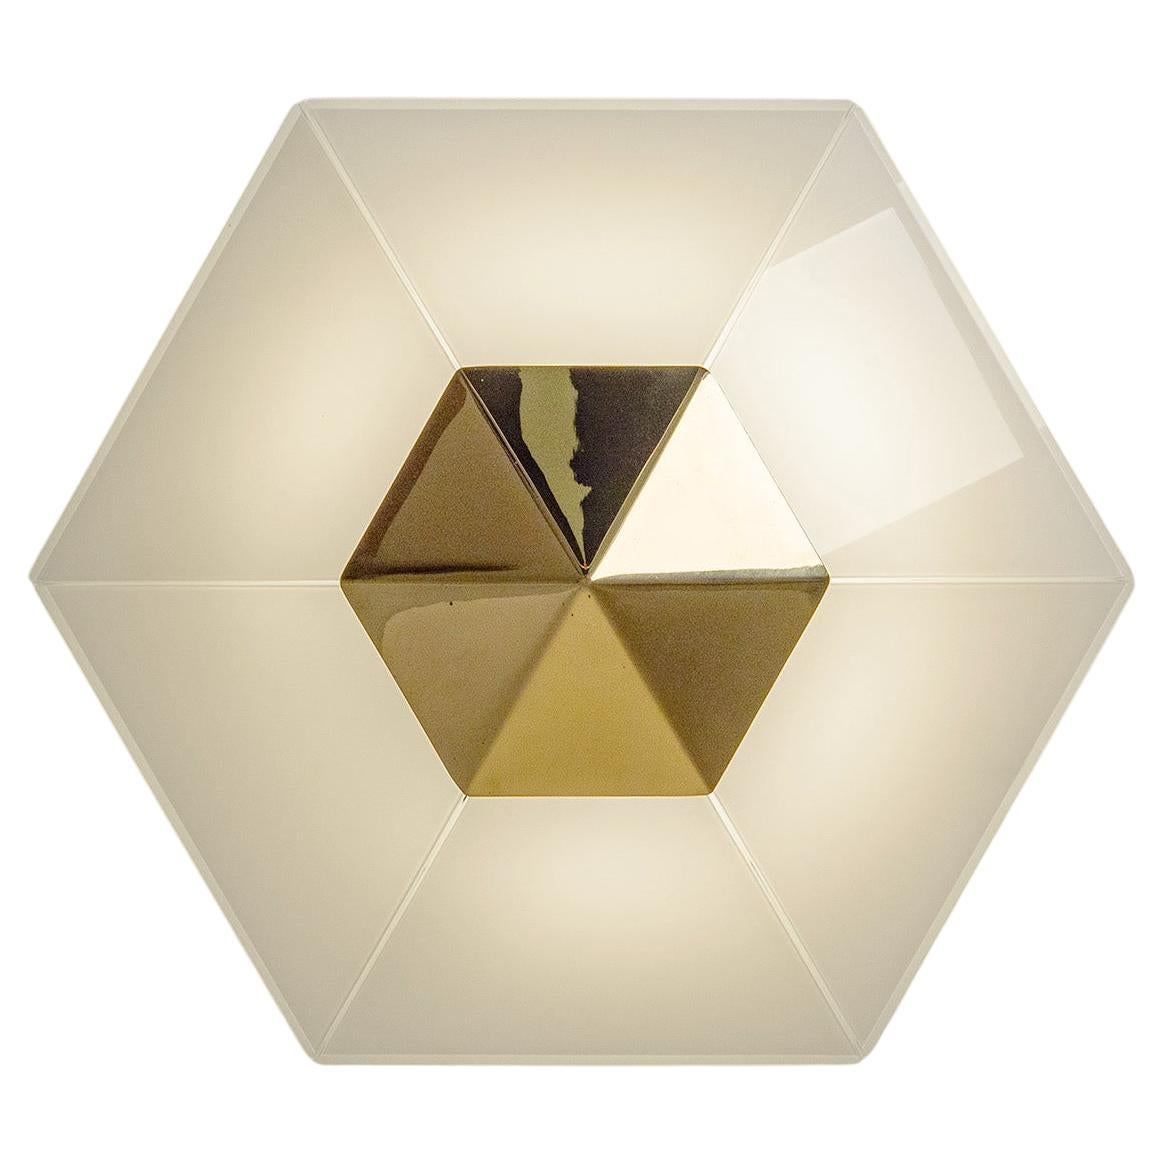 J.T. Kalmar Hexagonal Glass and Brass Ceiling Light, 1980s